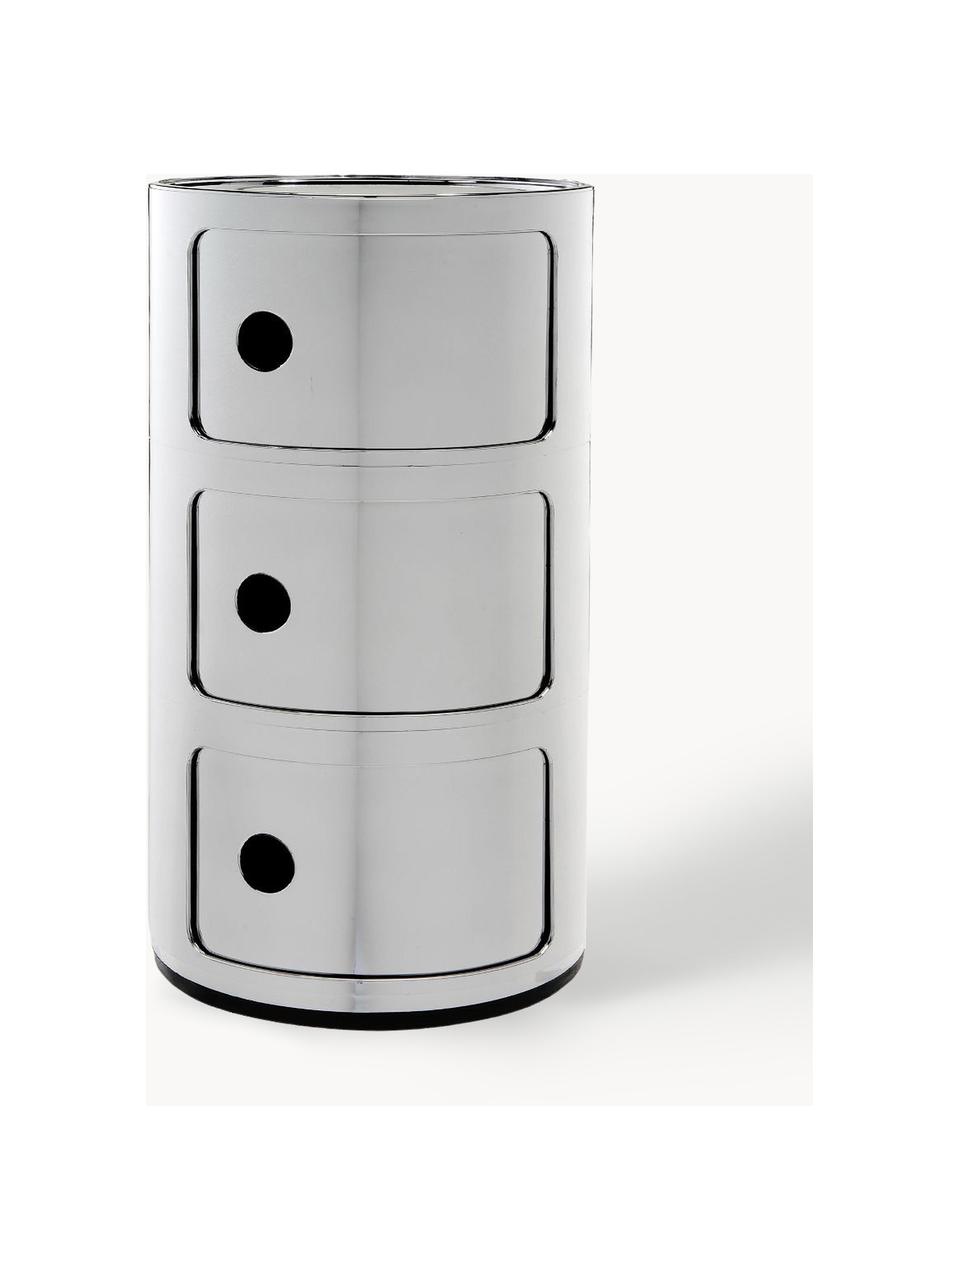 Designový odkládací stolek Componibili, 3 moduly, Umělá hmota, chromovaná, Stříbrná, Ø 32 cm, V 59 cm